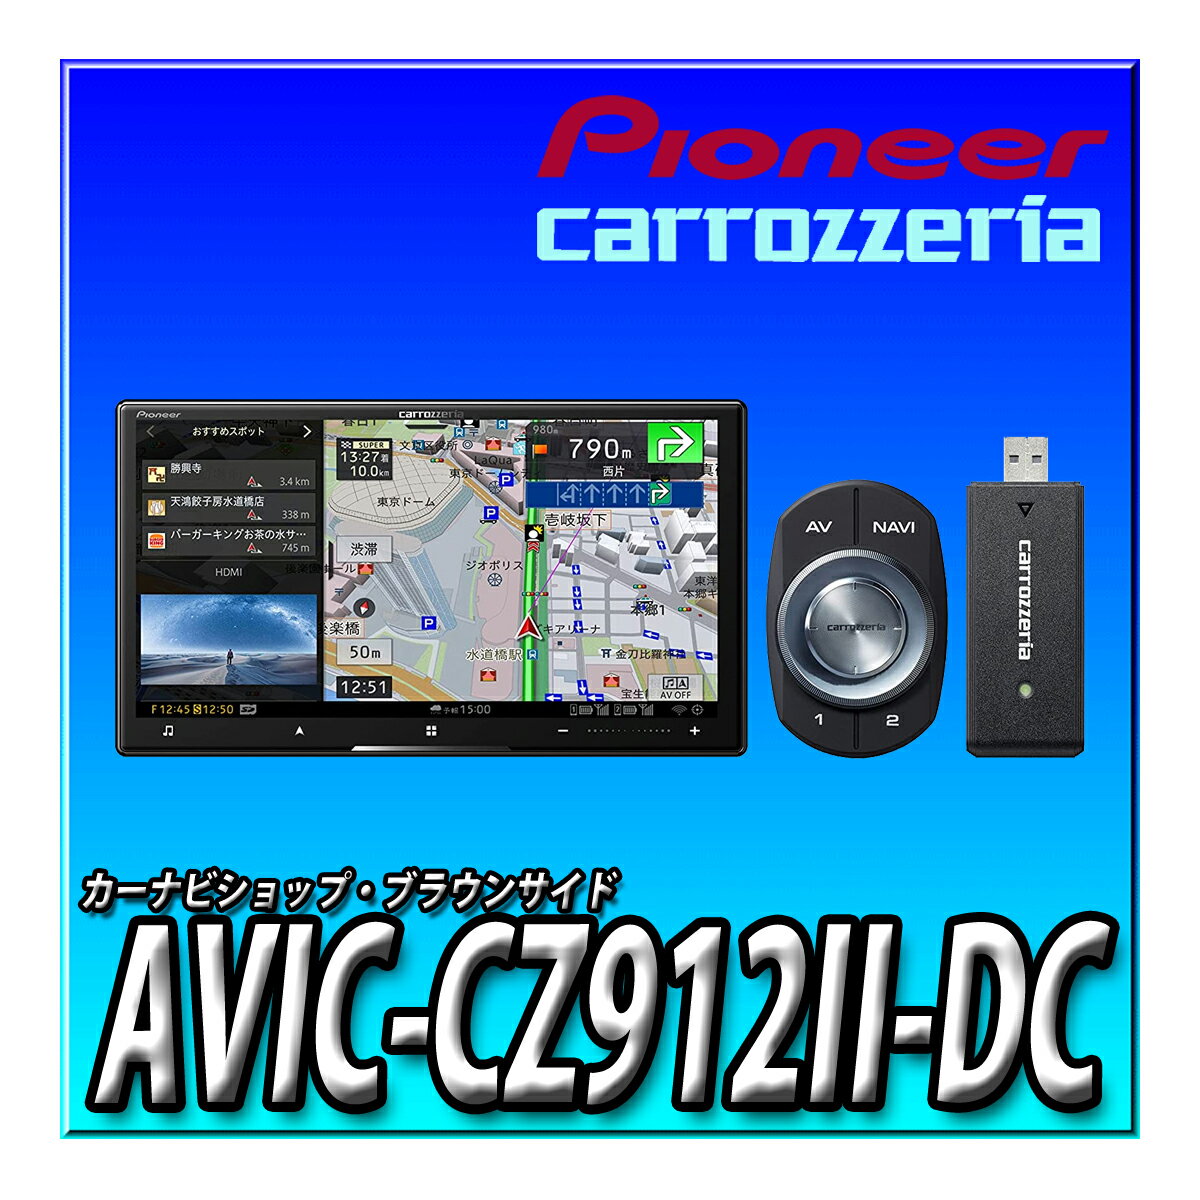 AVIC-CZ912II-DC 7インチ 2D(180mm) サイバーナビ 無料地図更新 ハイレゾ HD画質 ネットワークスティッ..